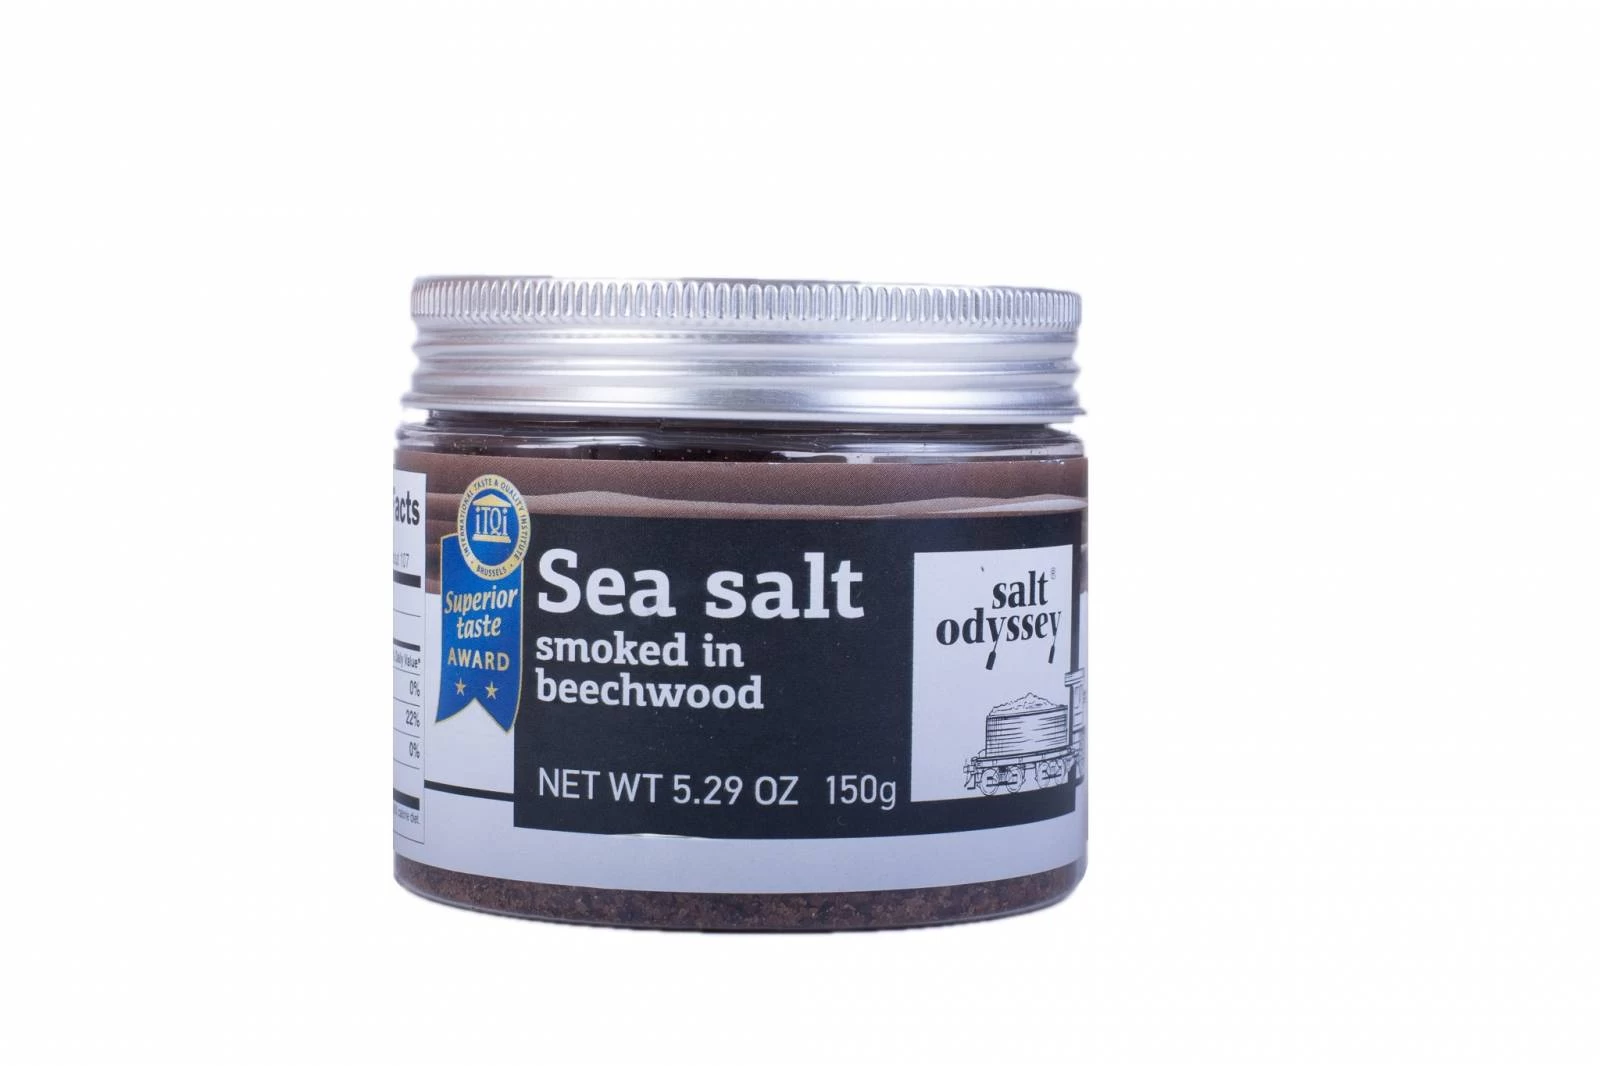 Sare de mare, afumata in fag, 150g - salt odyssey